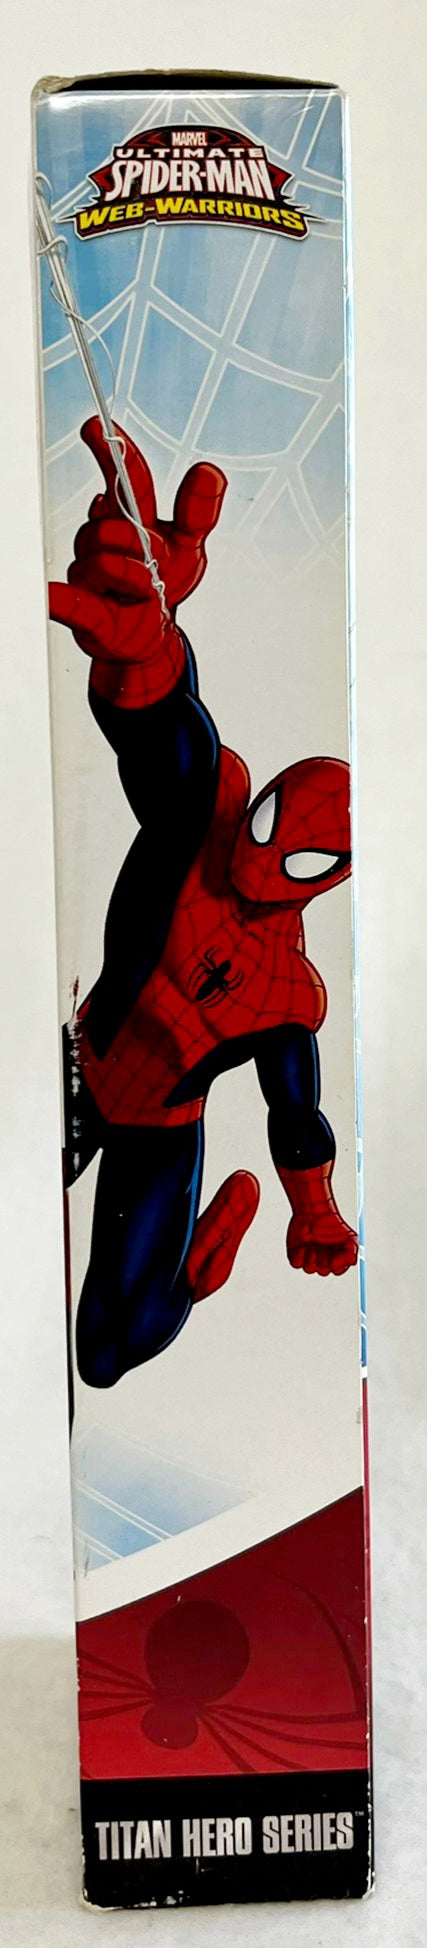 NIB *Marvel Ultimate Spider-Man Titan Hero Series (12"Figure)